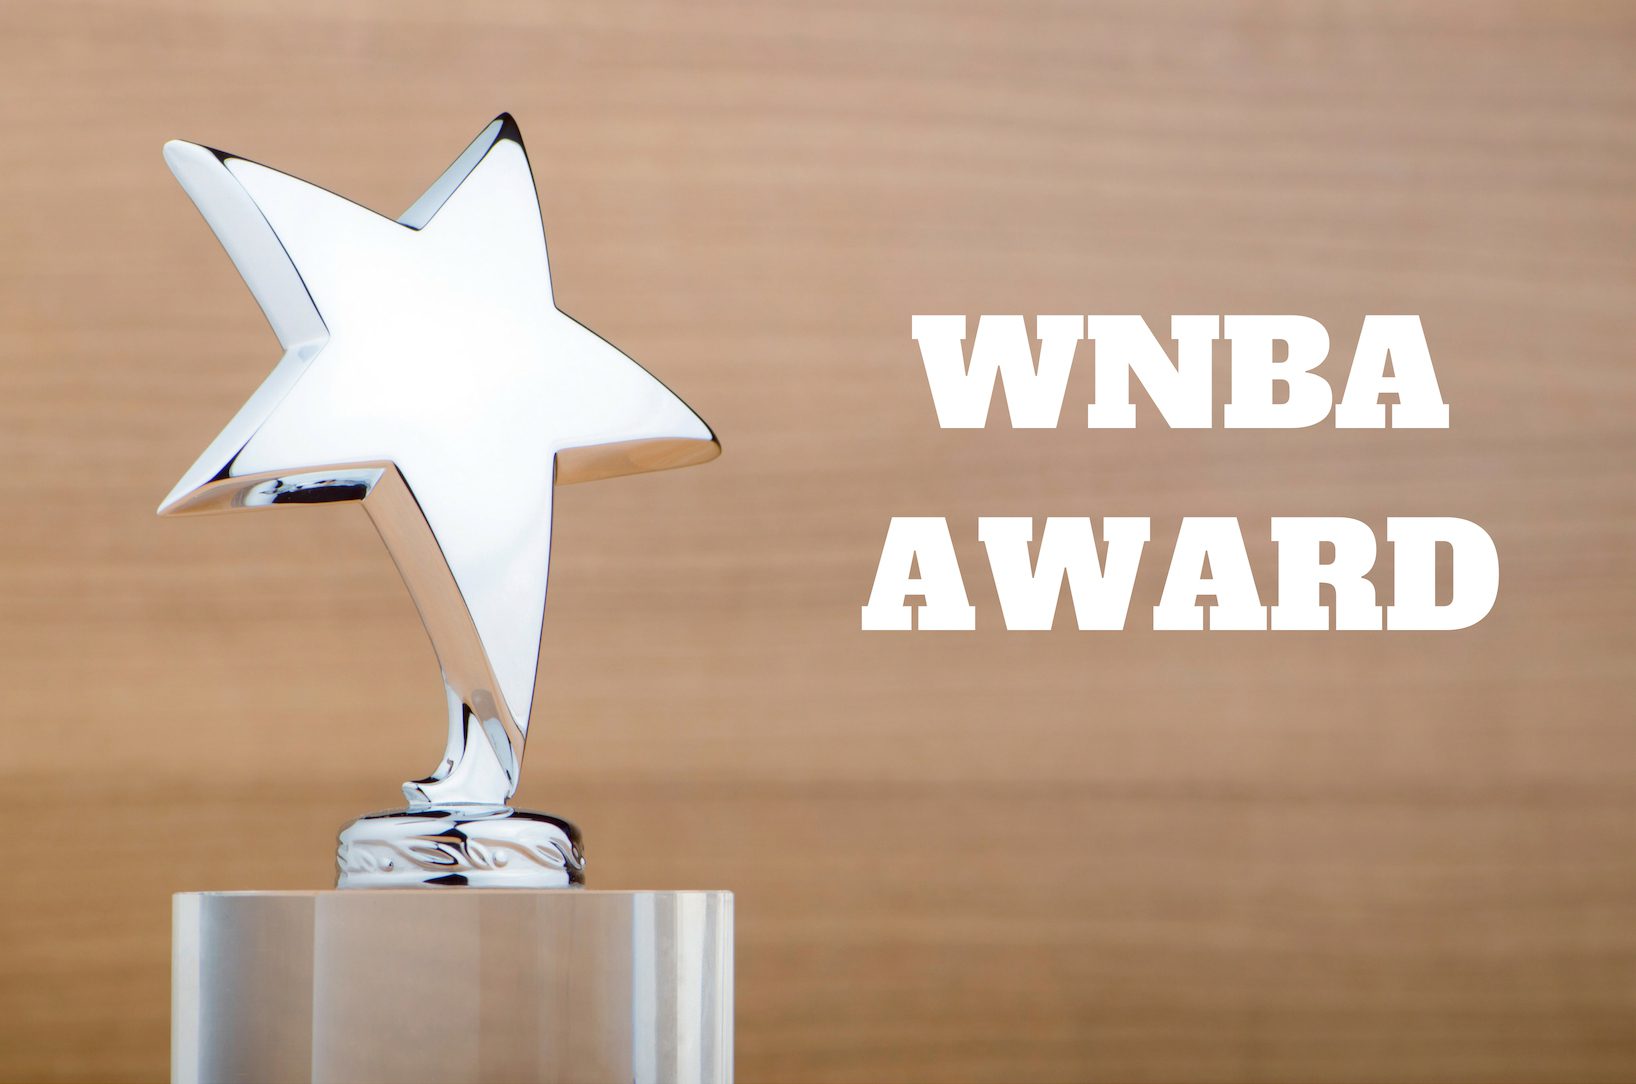 WNBA Award